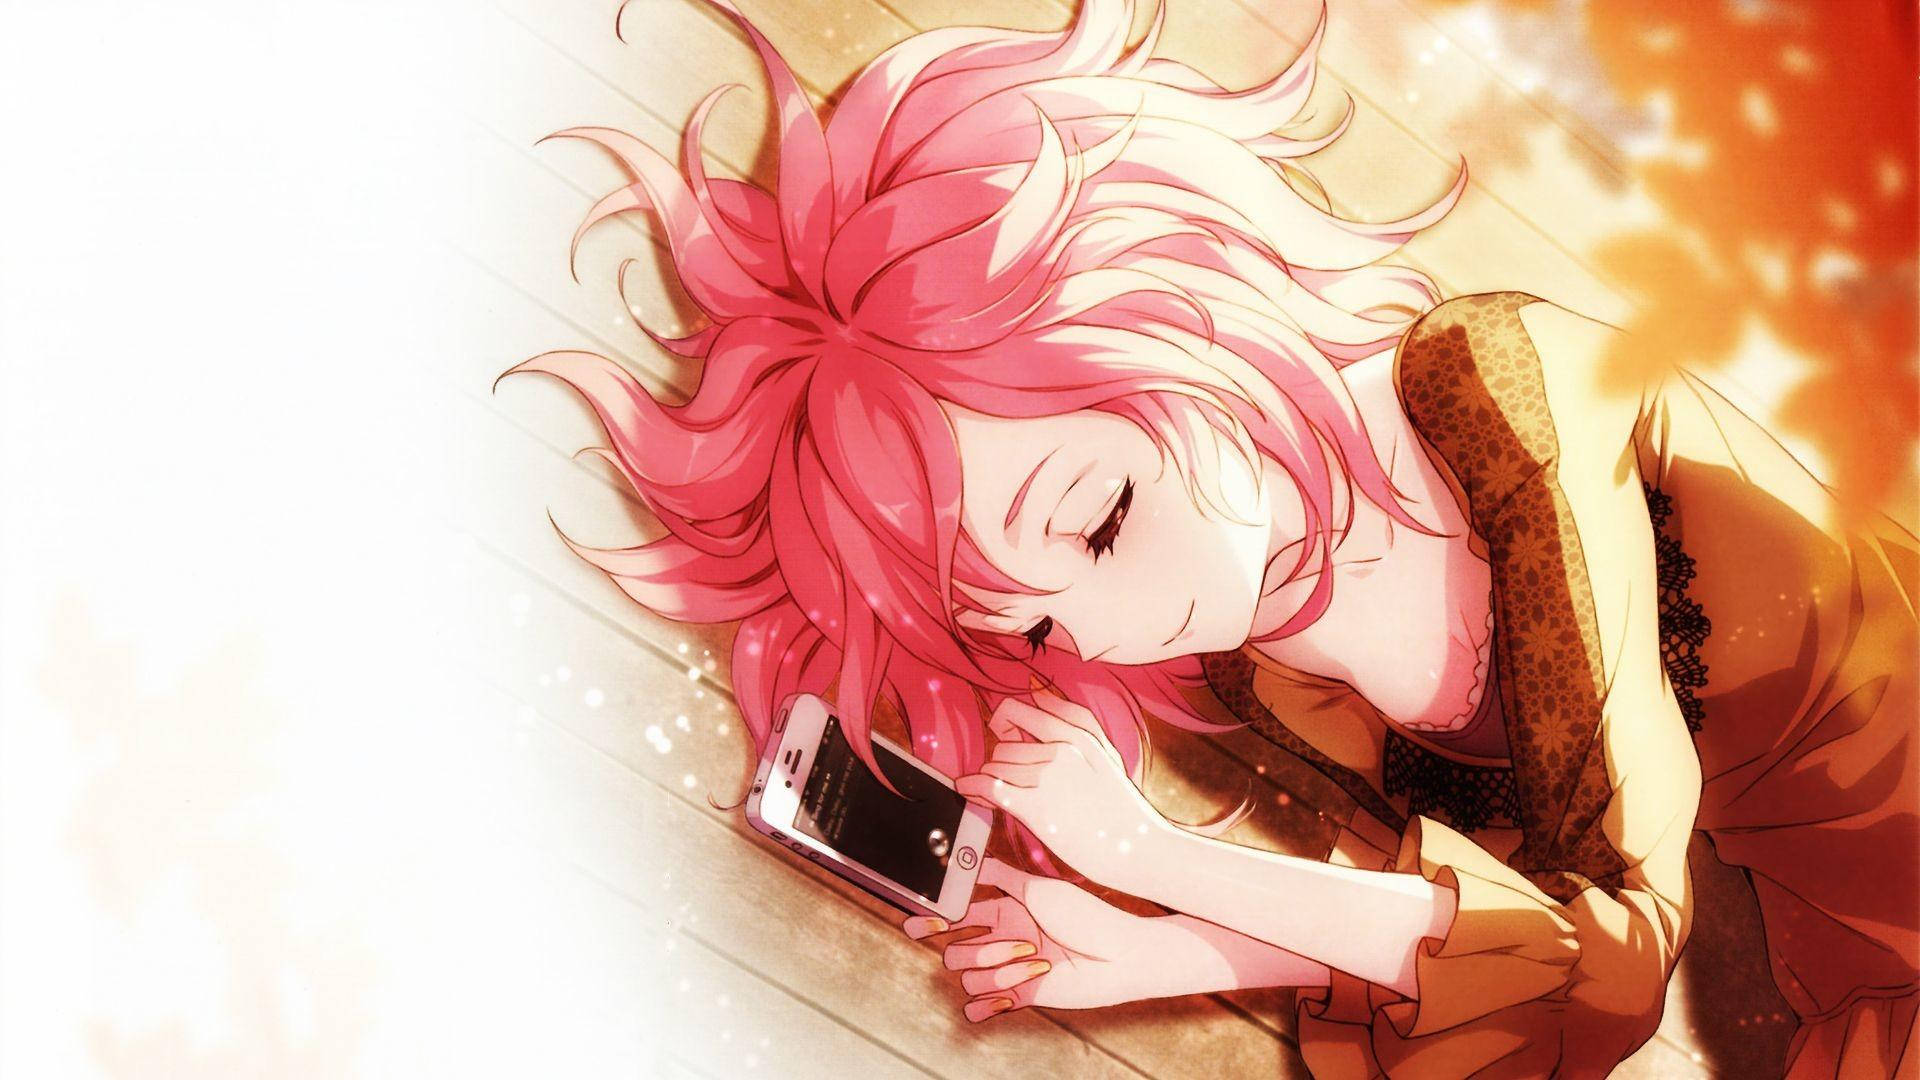 Kawaii Anime Girl Sleeping Next To Phone Wallpaper